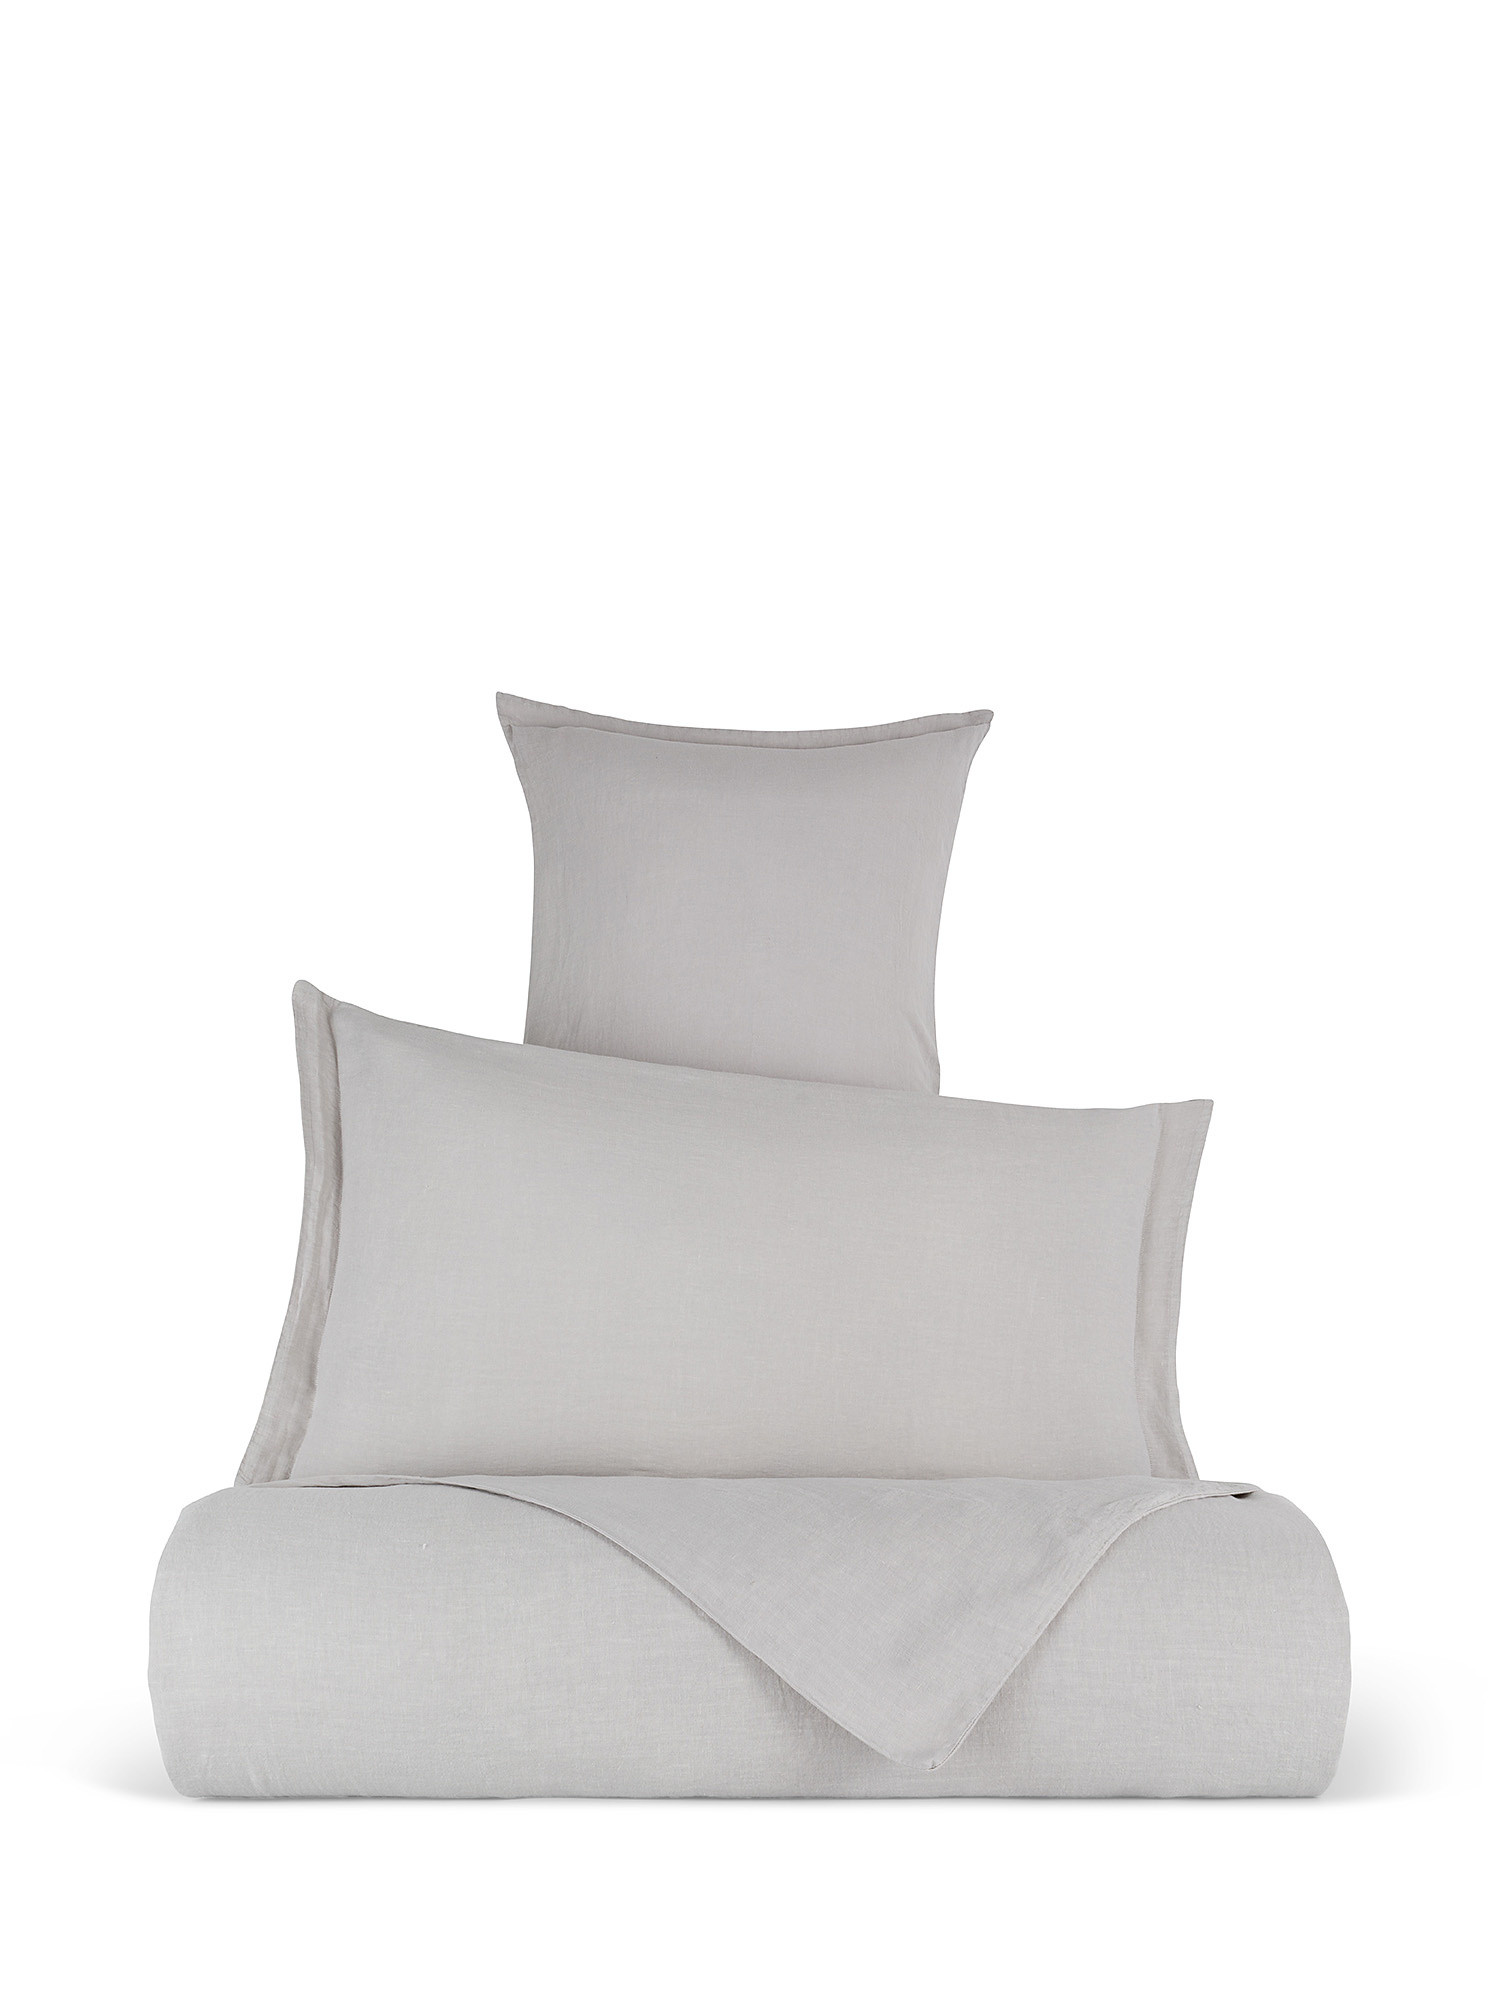 Zefiro plain pure linen sheet, Light Grey, large image number 0